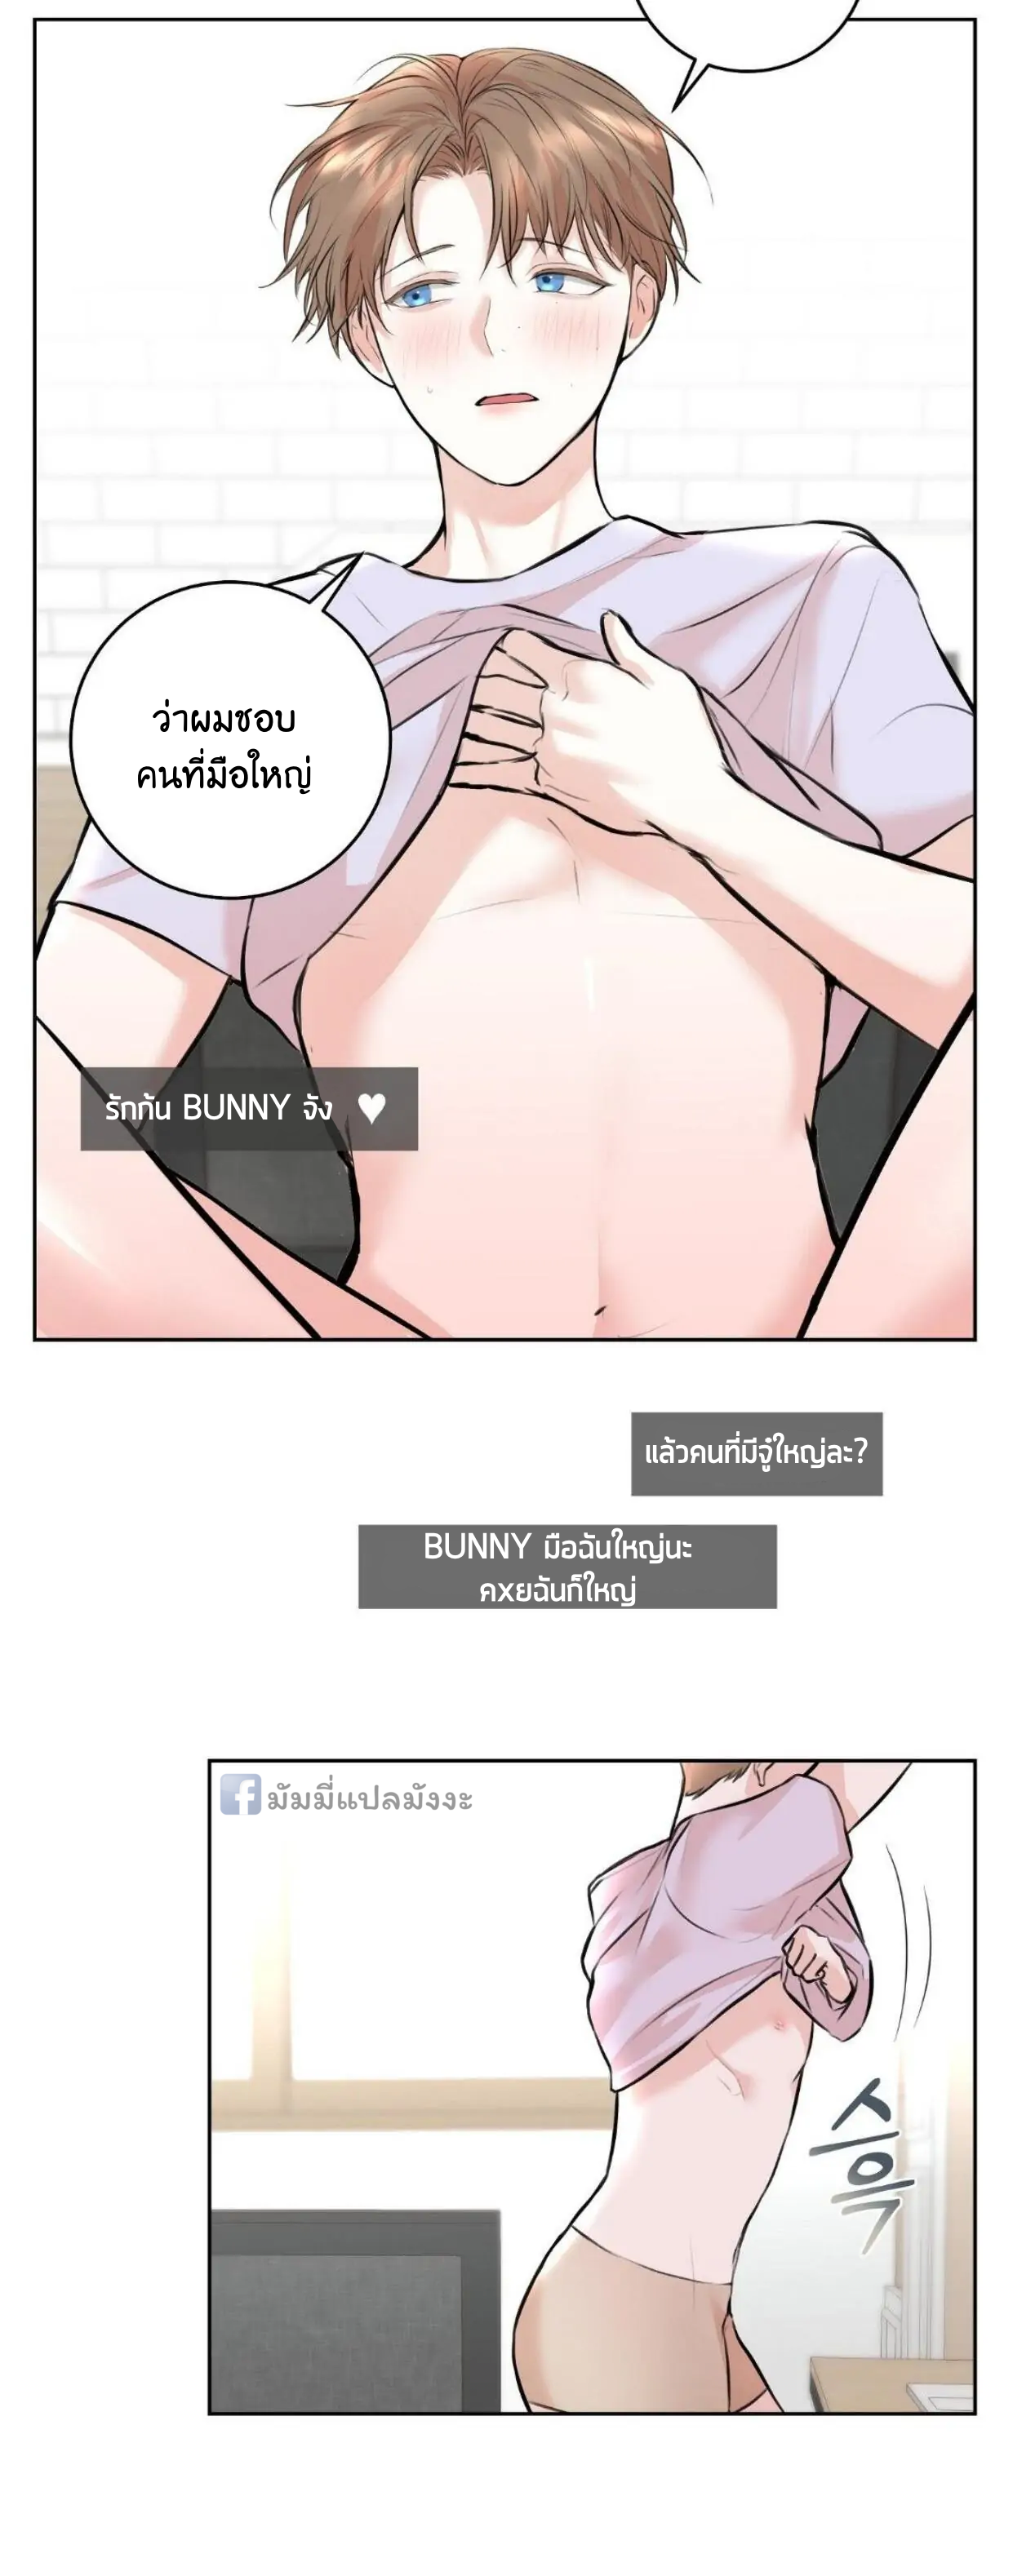 Camboy Bunny 6 (4)